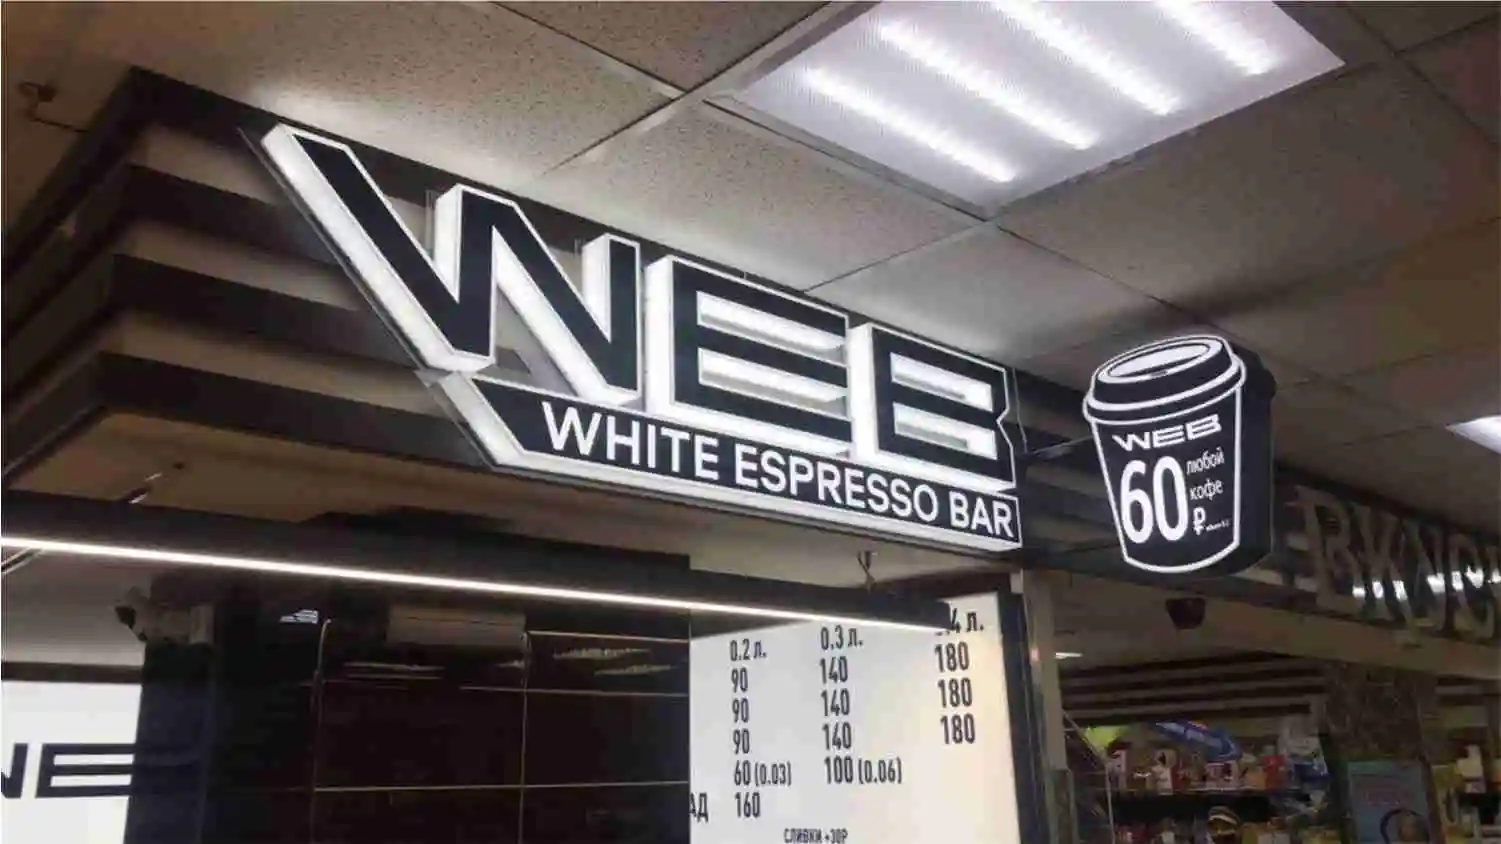 WEB white espresso bar